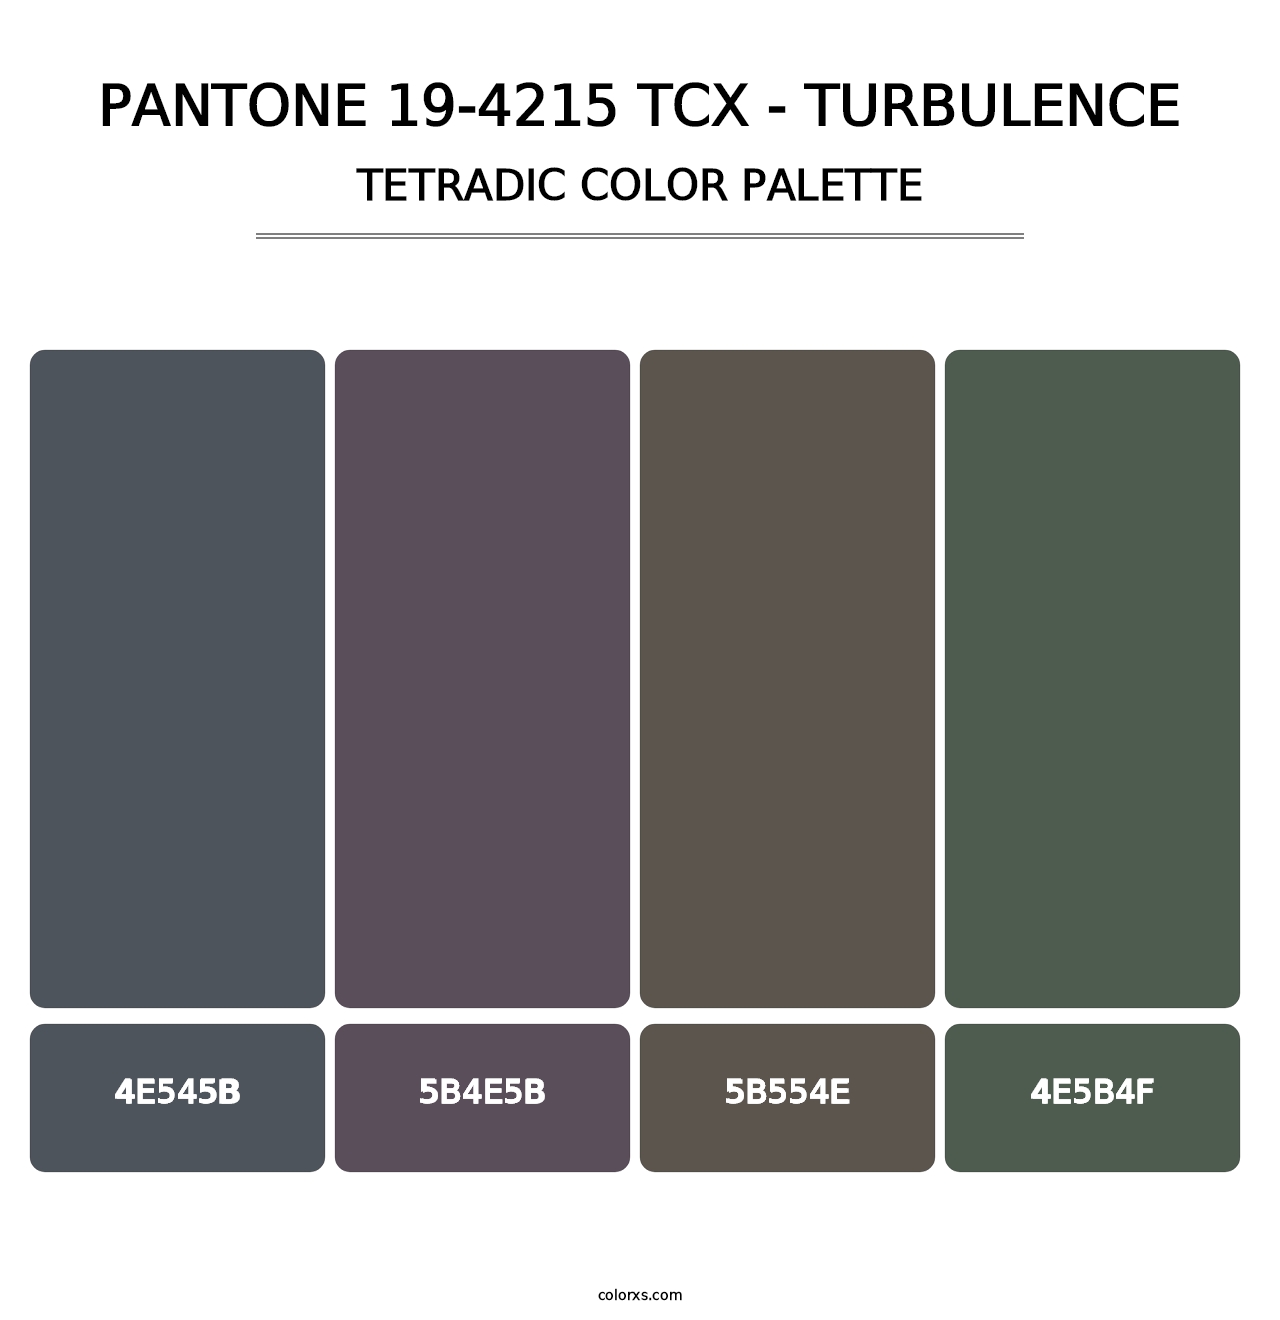 PANTONE 19-4215 TCX - Turbulence - Tetradic Color Palette